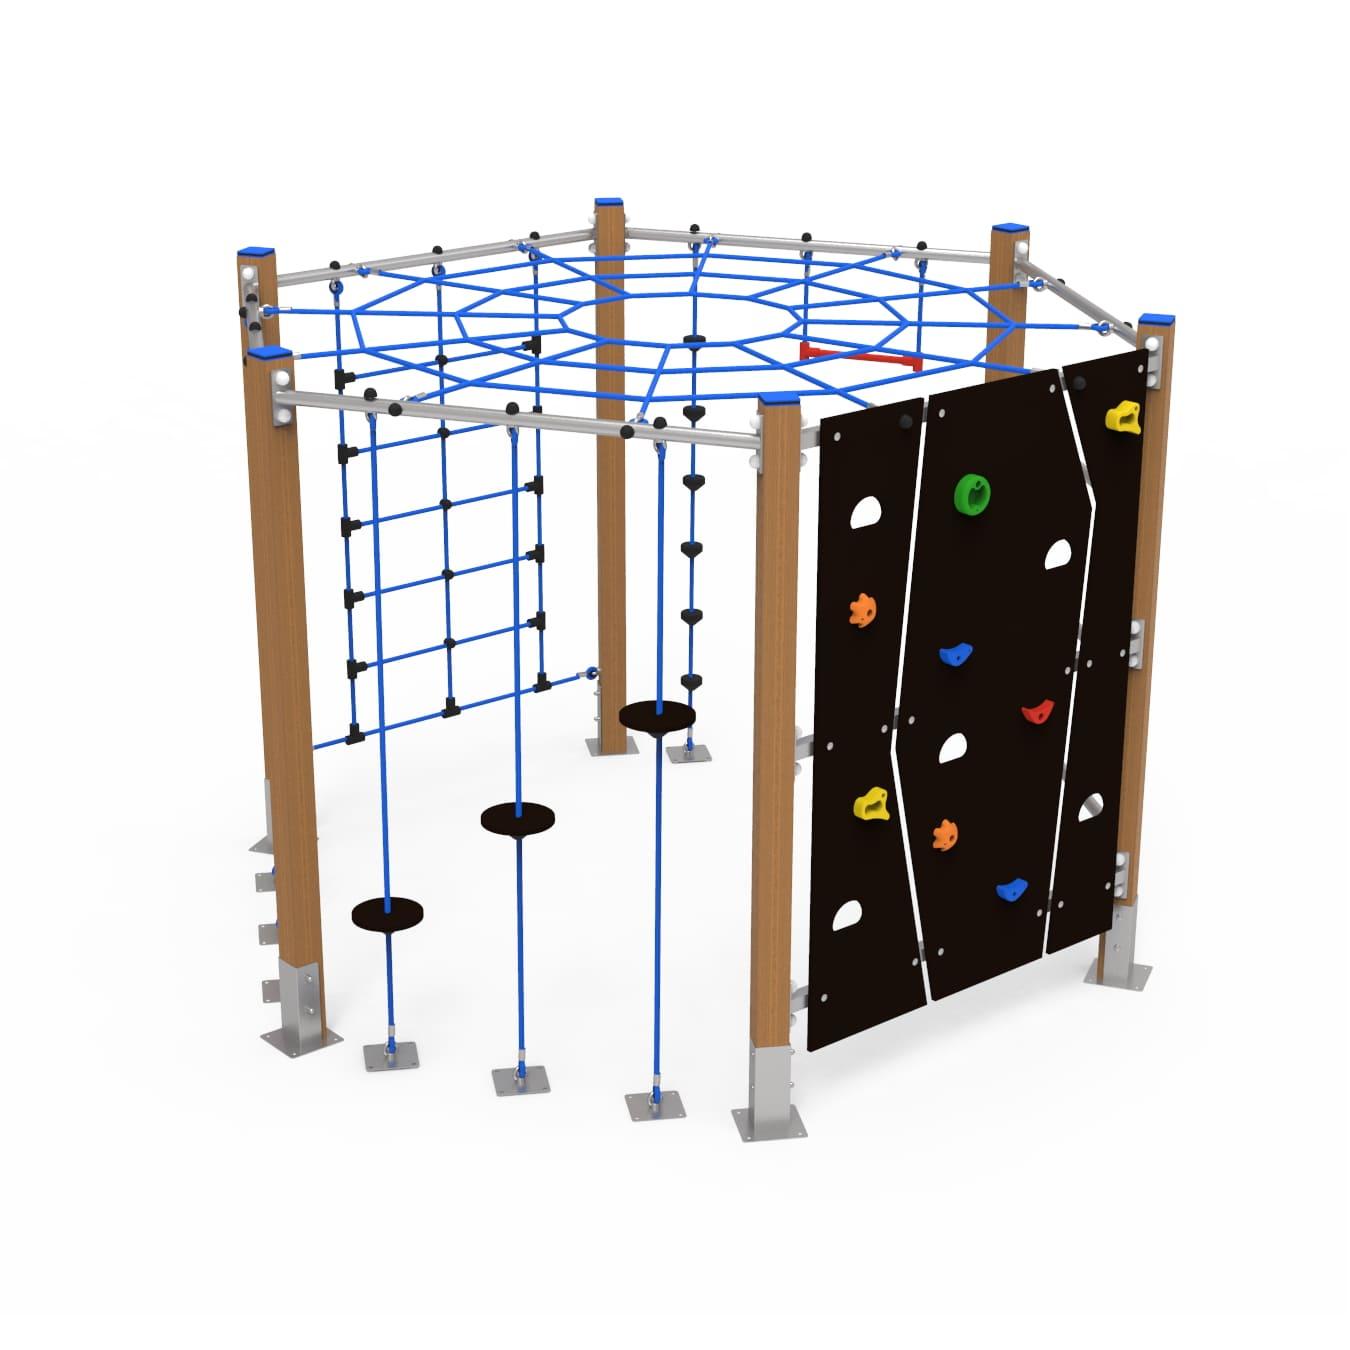 Parque infantil estrutura escalada hexagonal